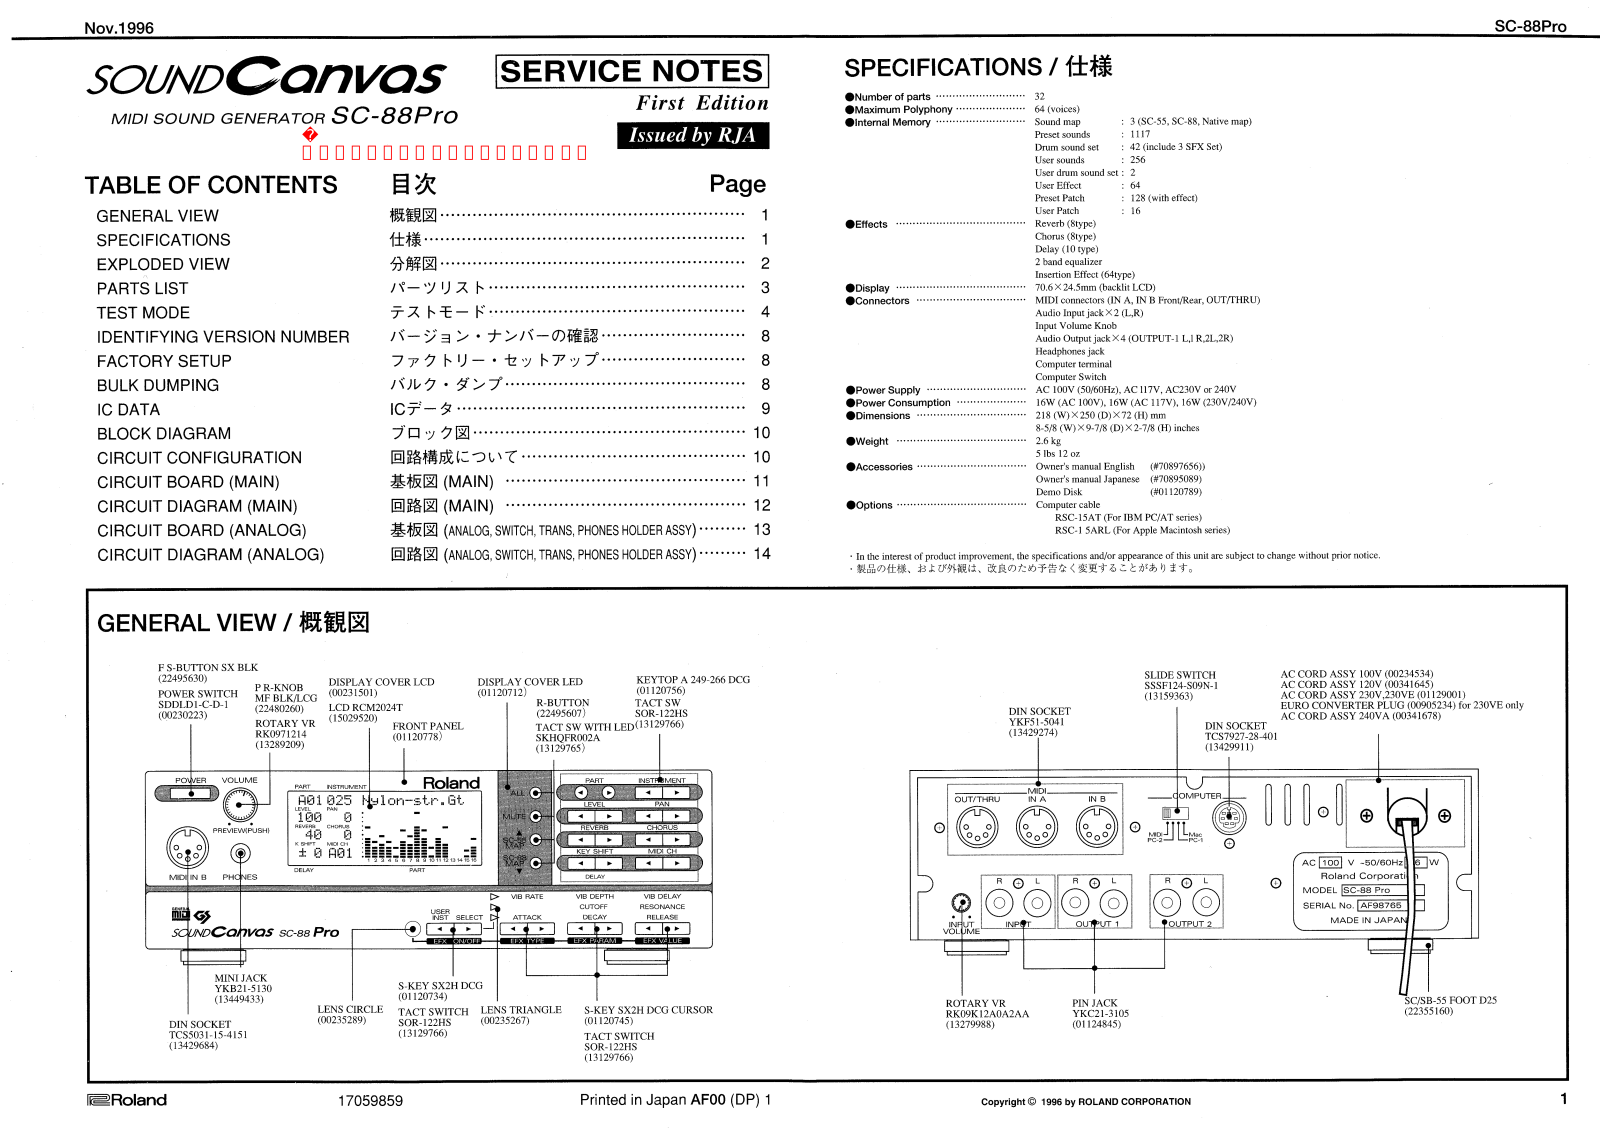 Roland SC-88Pro Service Notes